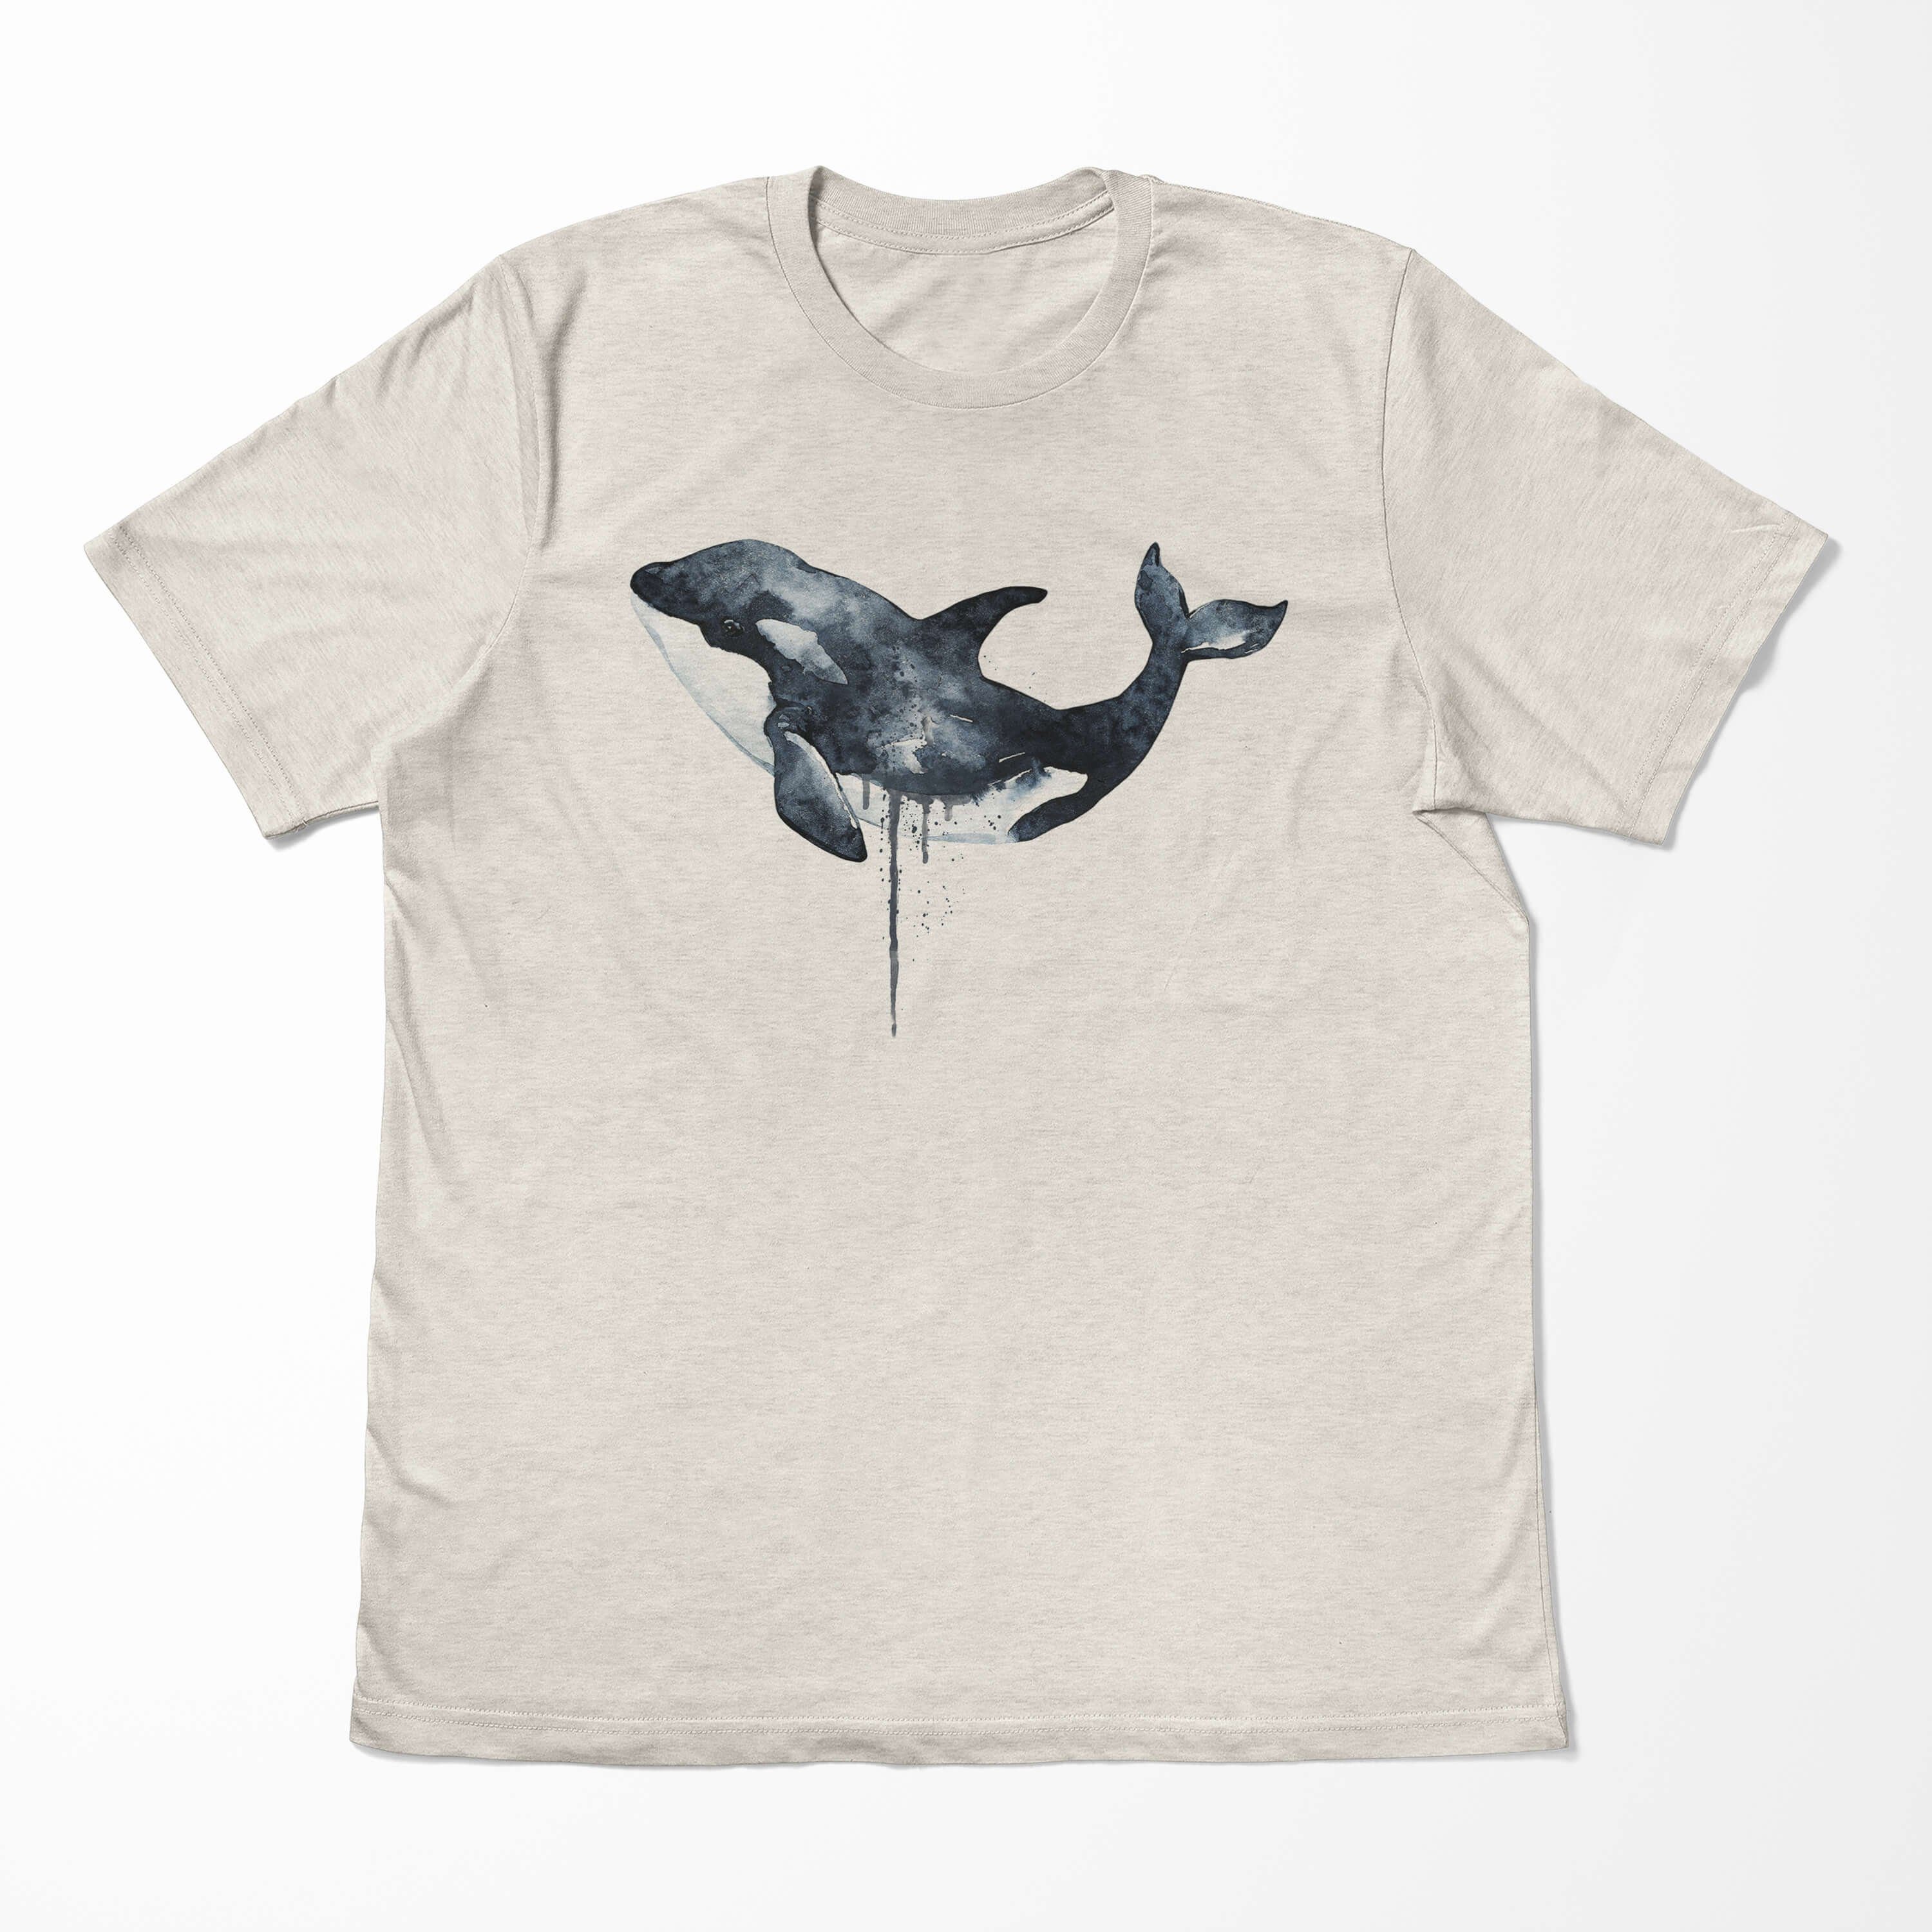 Sinus Art (1-tlg) Shirt Bio-Baumwolle Herren T-Shirt Ökomo 100% Motiv Killerwal Orca Nachhaltig gekämmte T-Shirt Wasserfarben